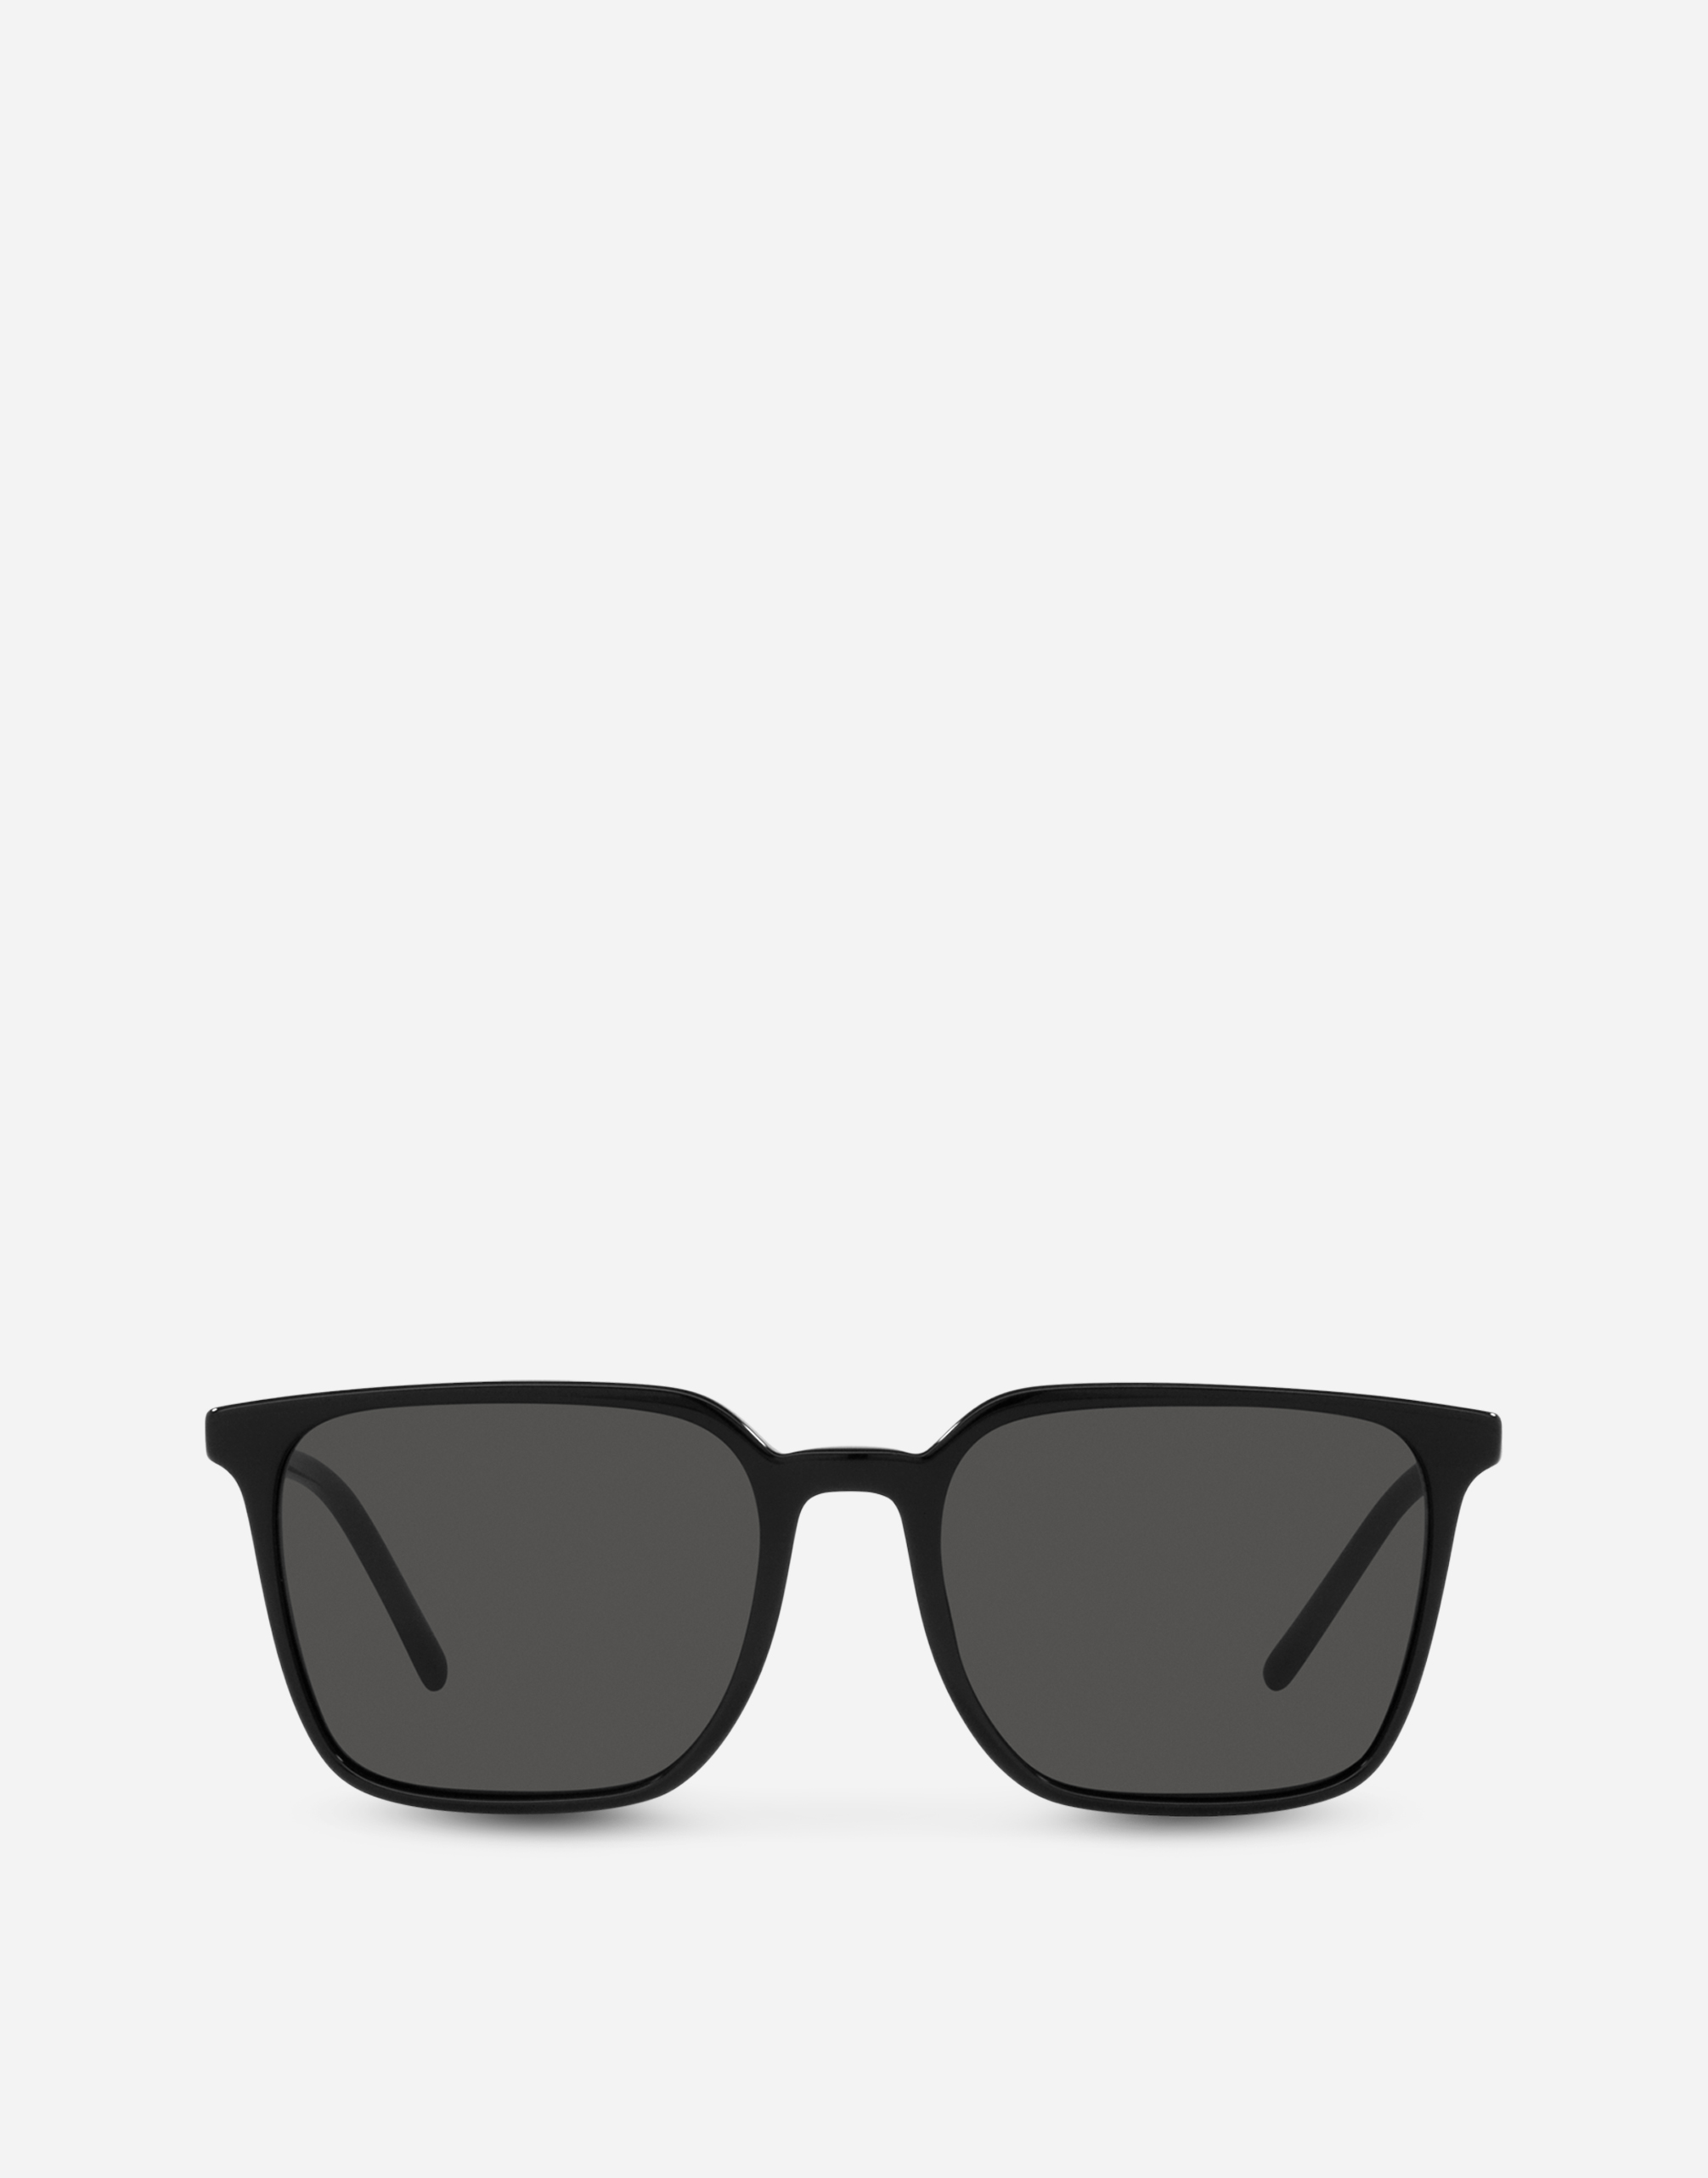 Dolce & Gabbana Thin Profile Sunglasses In Black